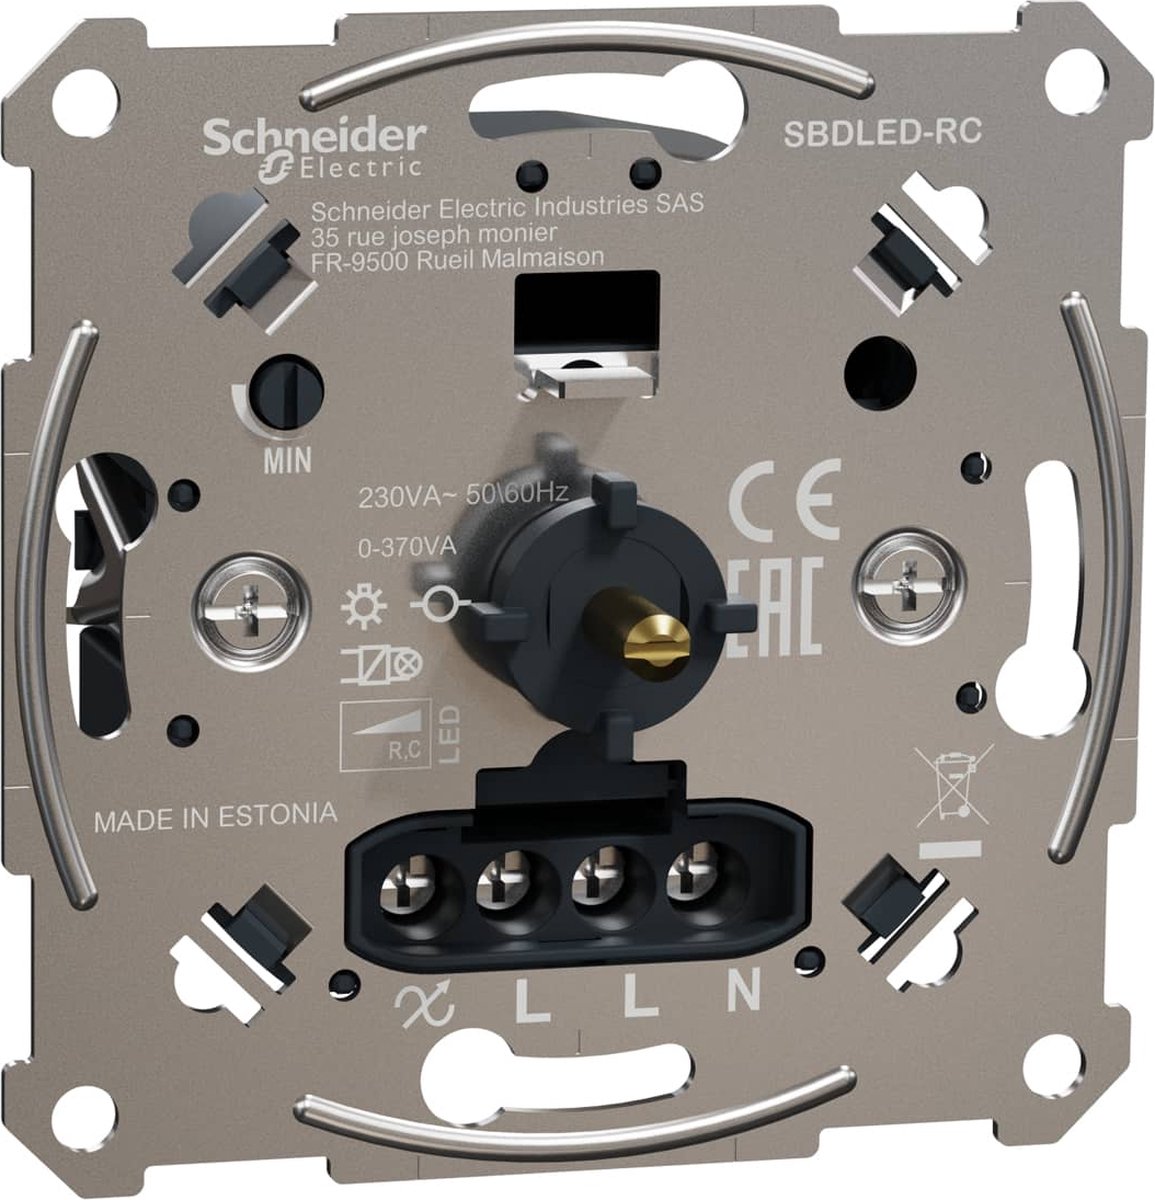 Sokkel - Multiwire LED Draaidimmer 0-370W - Merten - Schneider Electric - MTN5146-0000